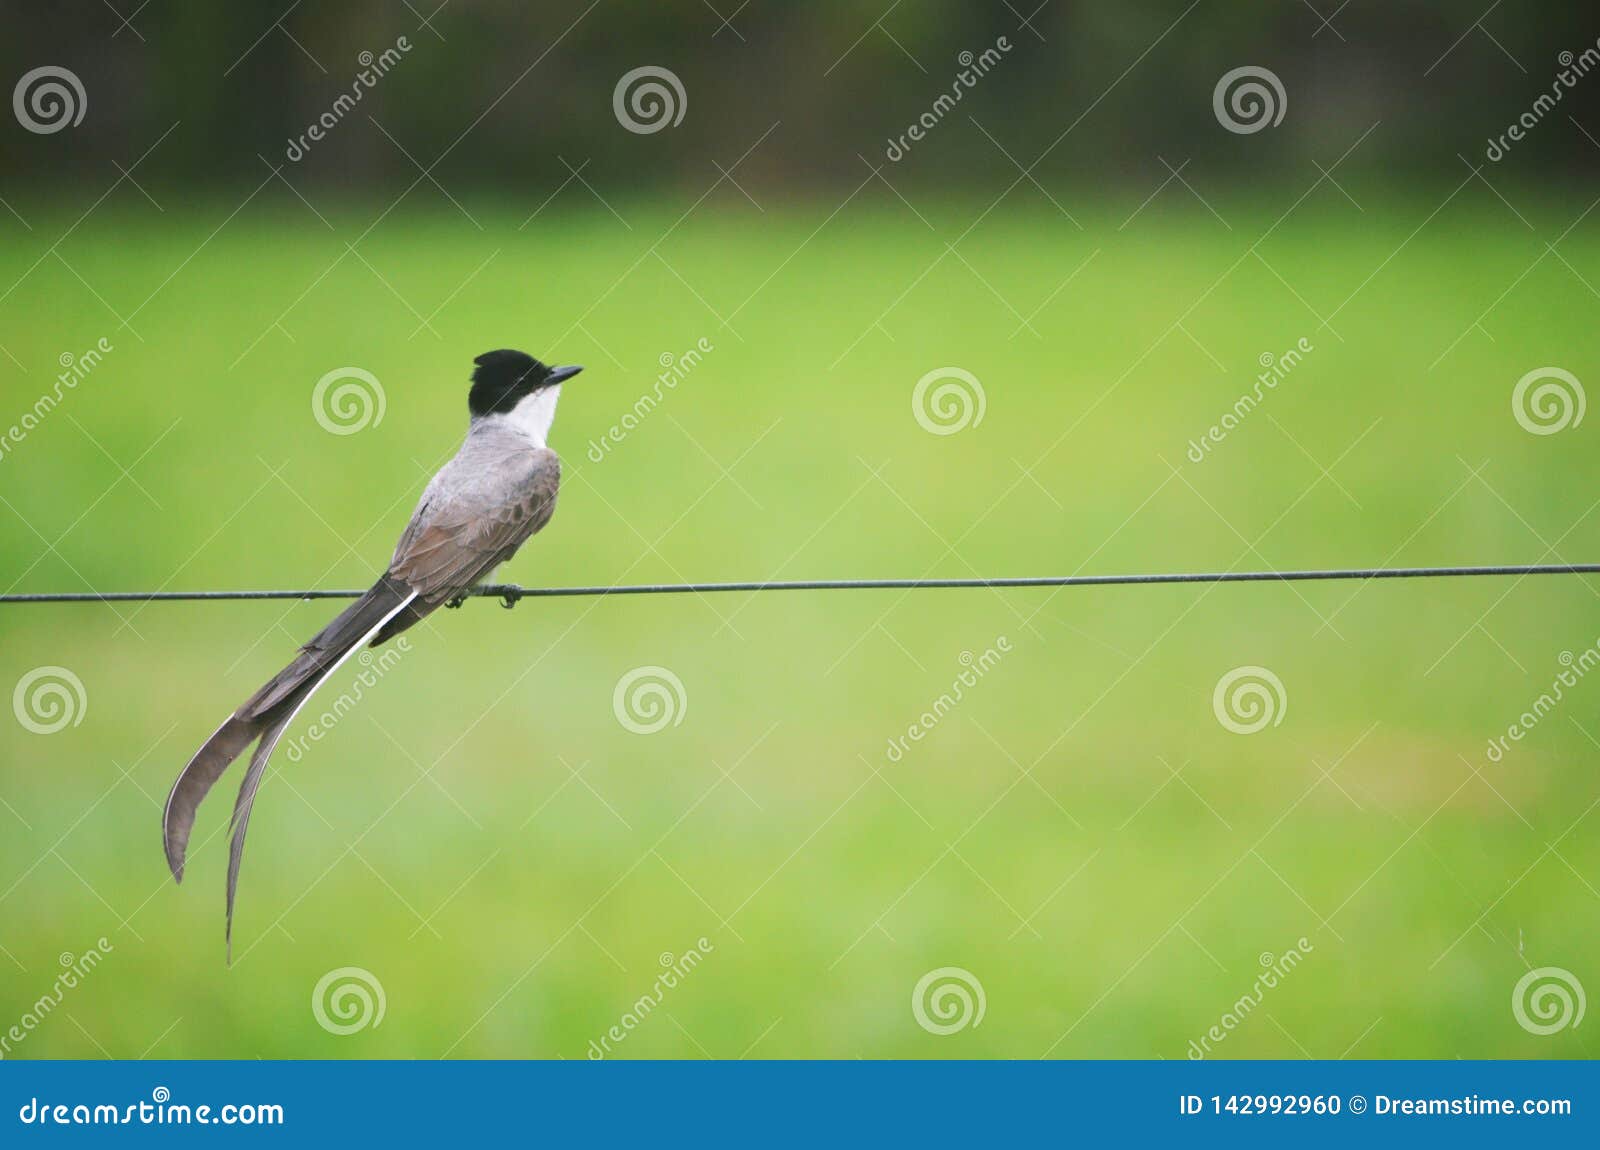 bird on green grass background